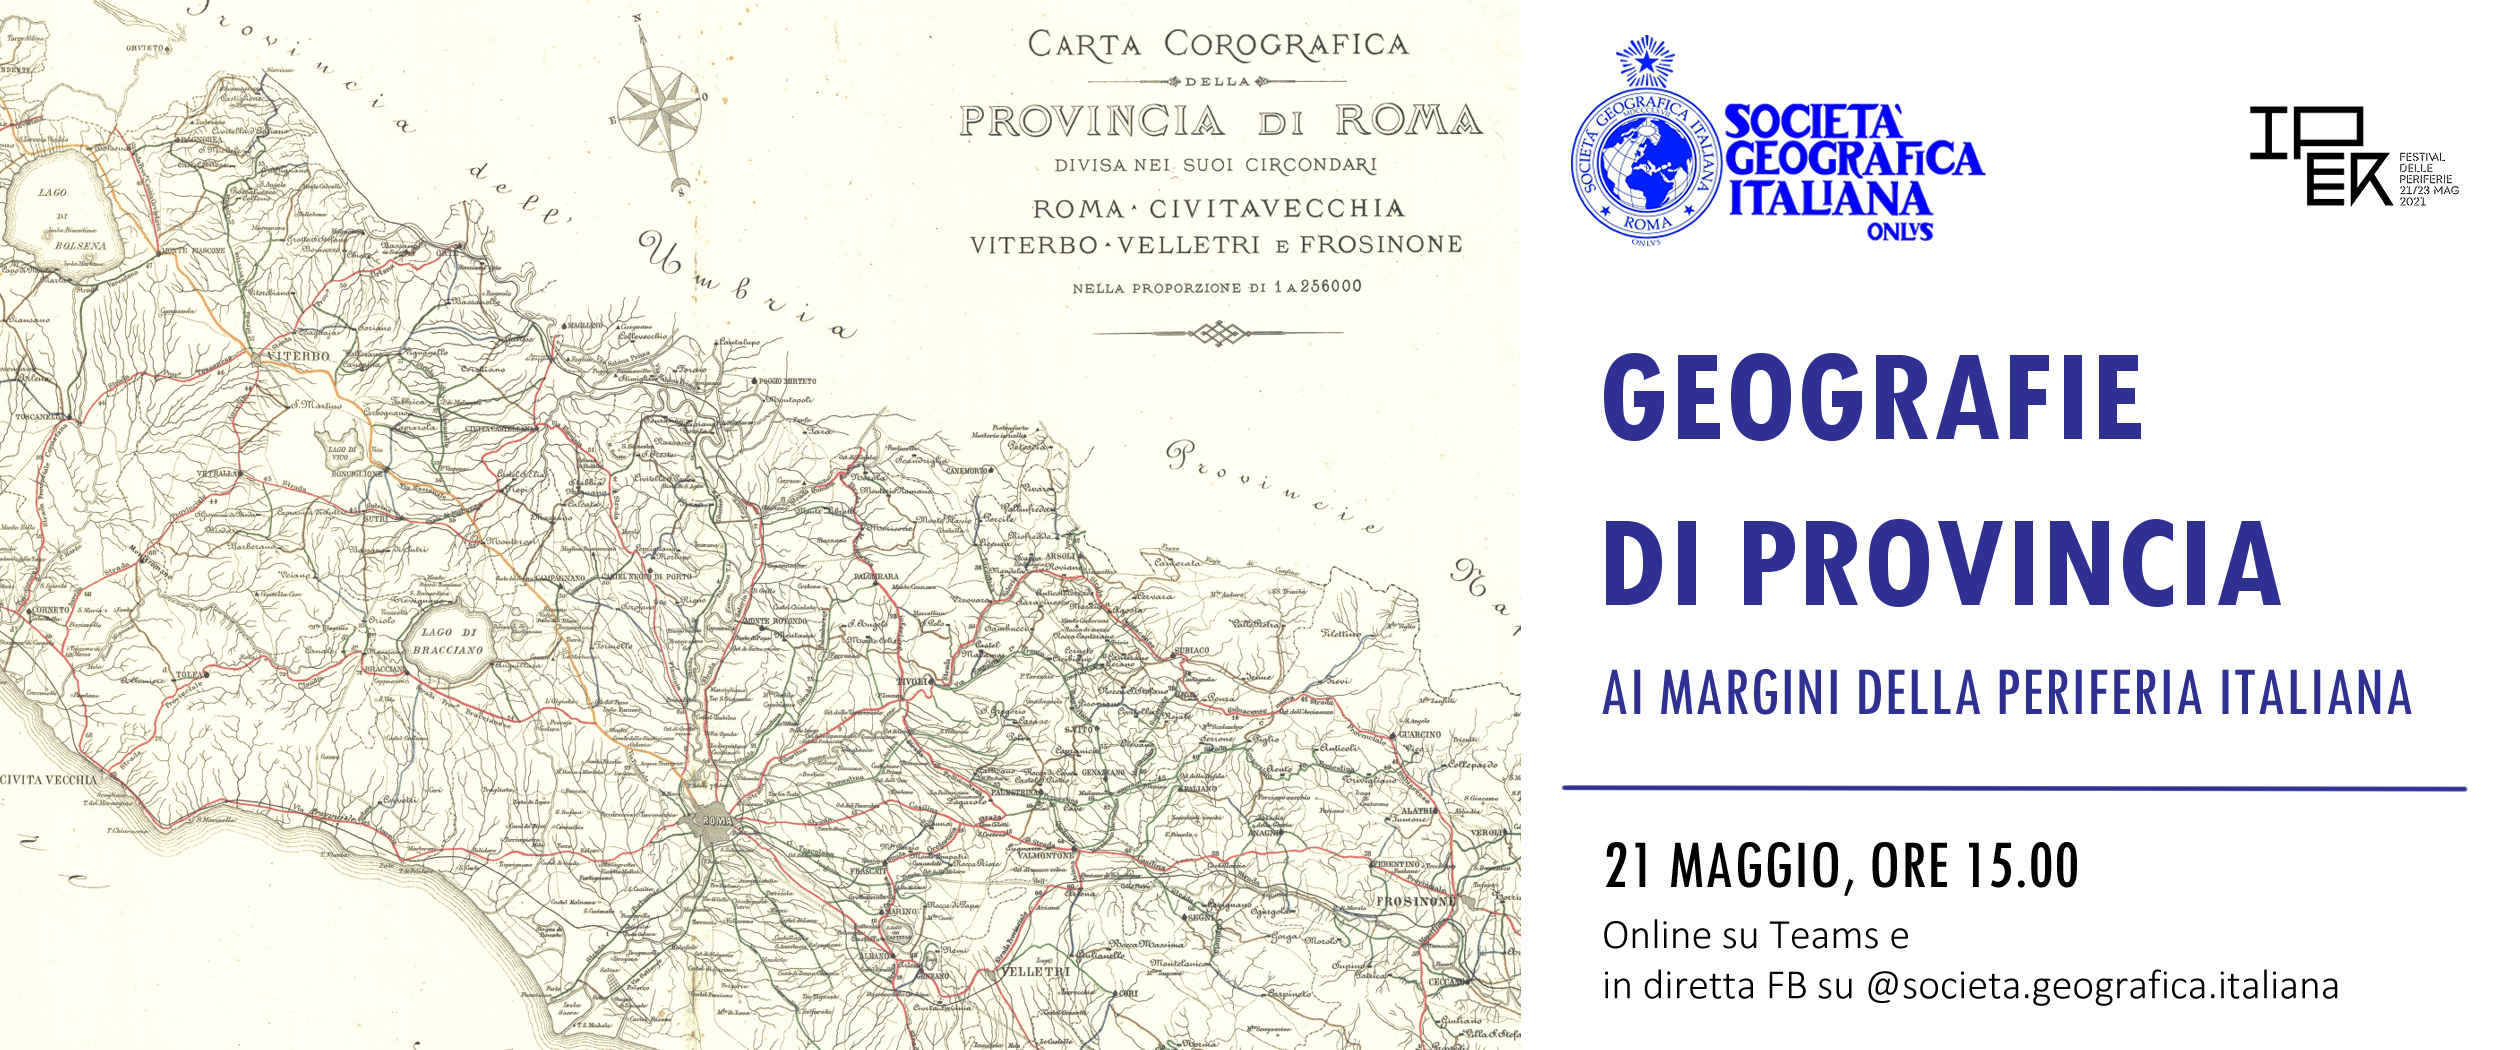 VENERDI’ 21 MAGGIO 2021, ORE 15,00 “GEOGRAFIE DI PROVINCIA: AI MARGINI DELLA PERIFERIA ITALIANA” NELL’AMBITO DEL FESTIVAL DELLE PERIFERIE